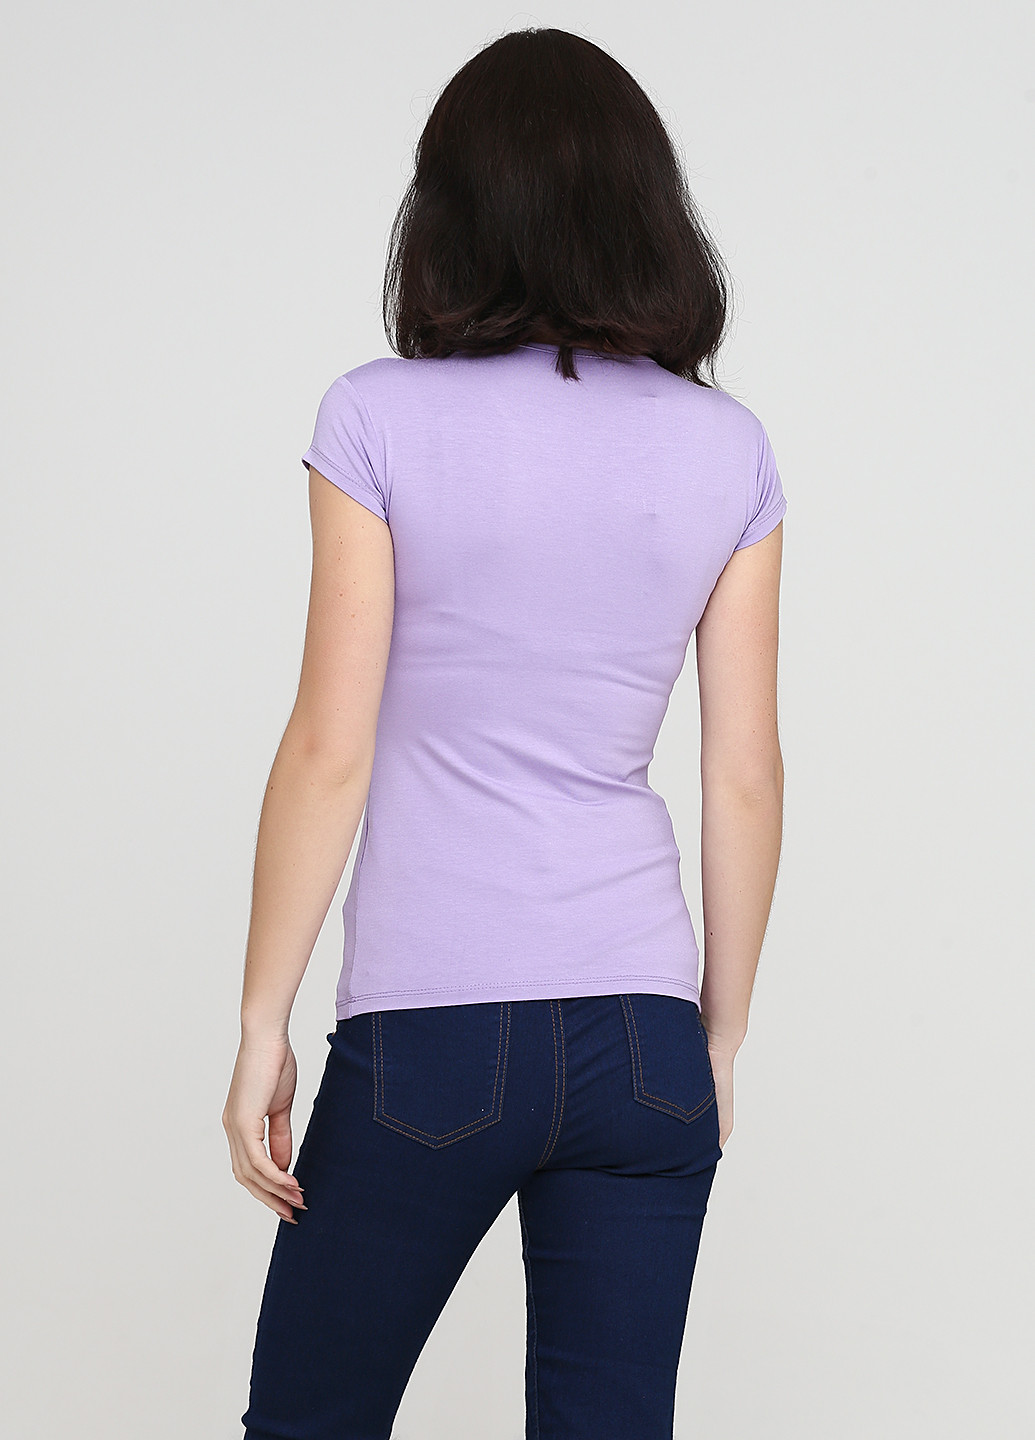 Світло-фіолетова літня футболка P'tit lou lou